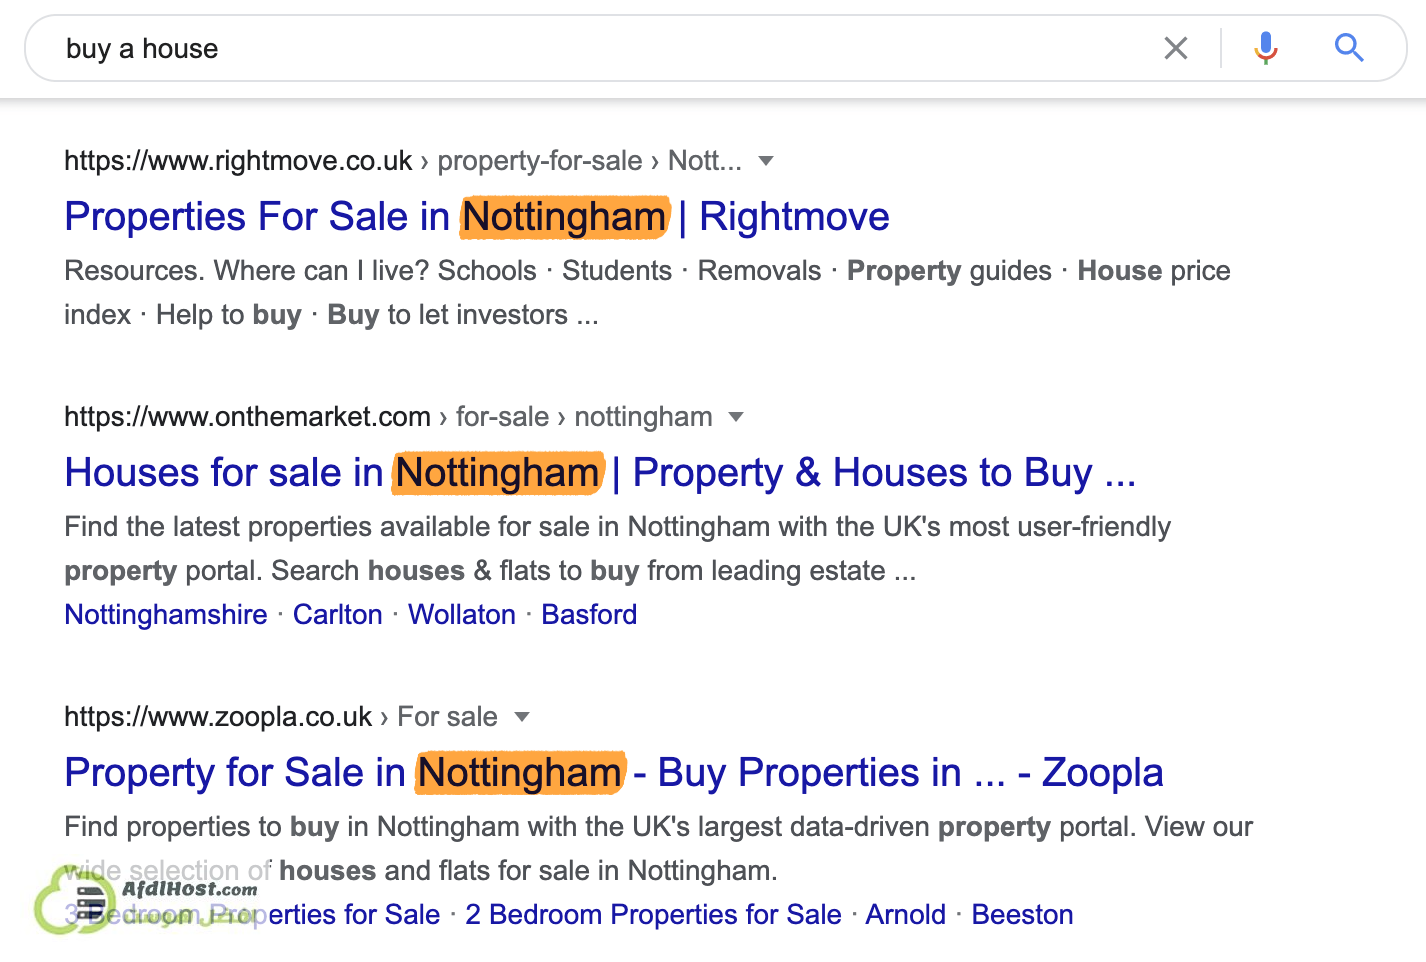 نتائج البحث علي كلمة شراء منزل